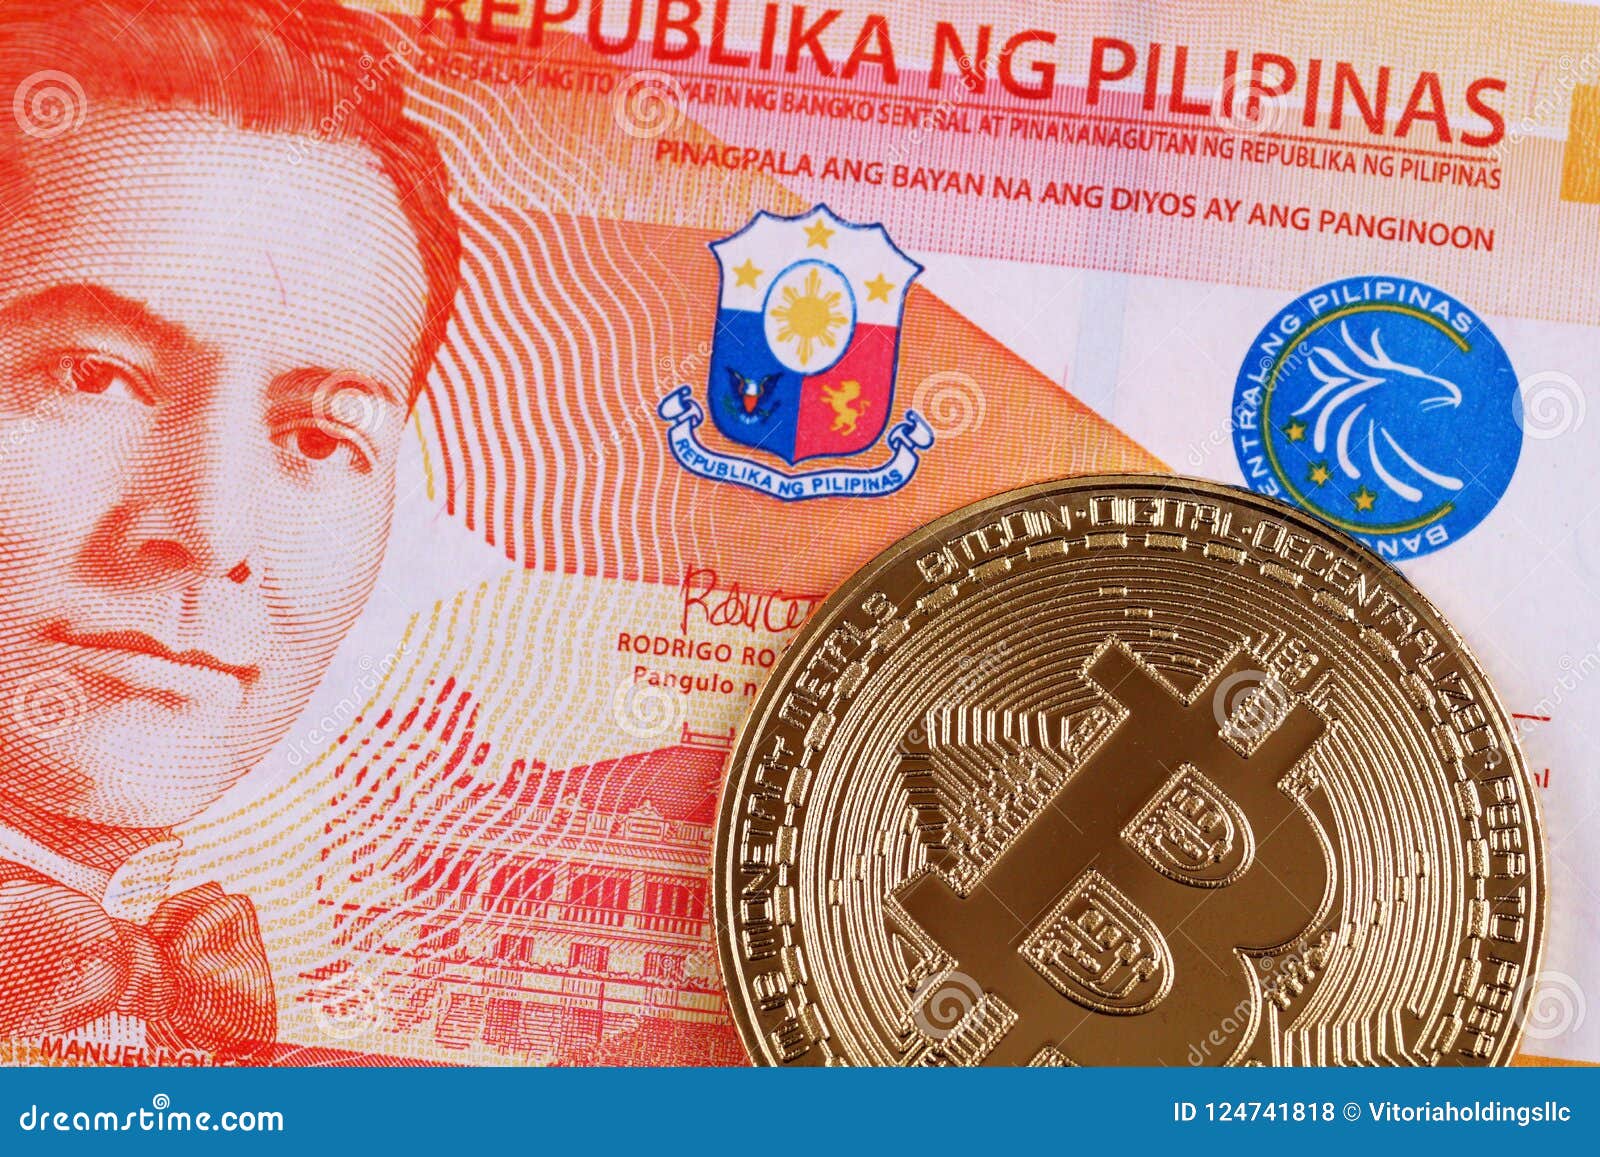 50.90 philippine peso to bitcoin